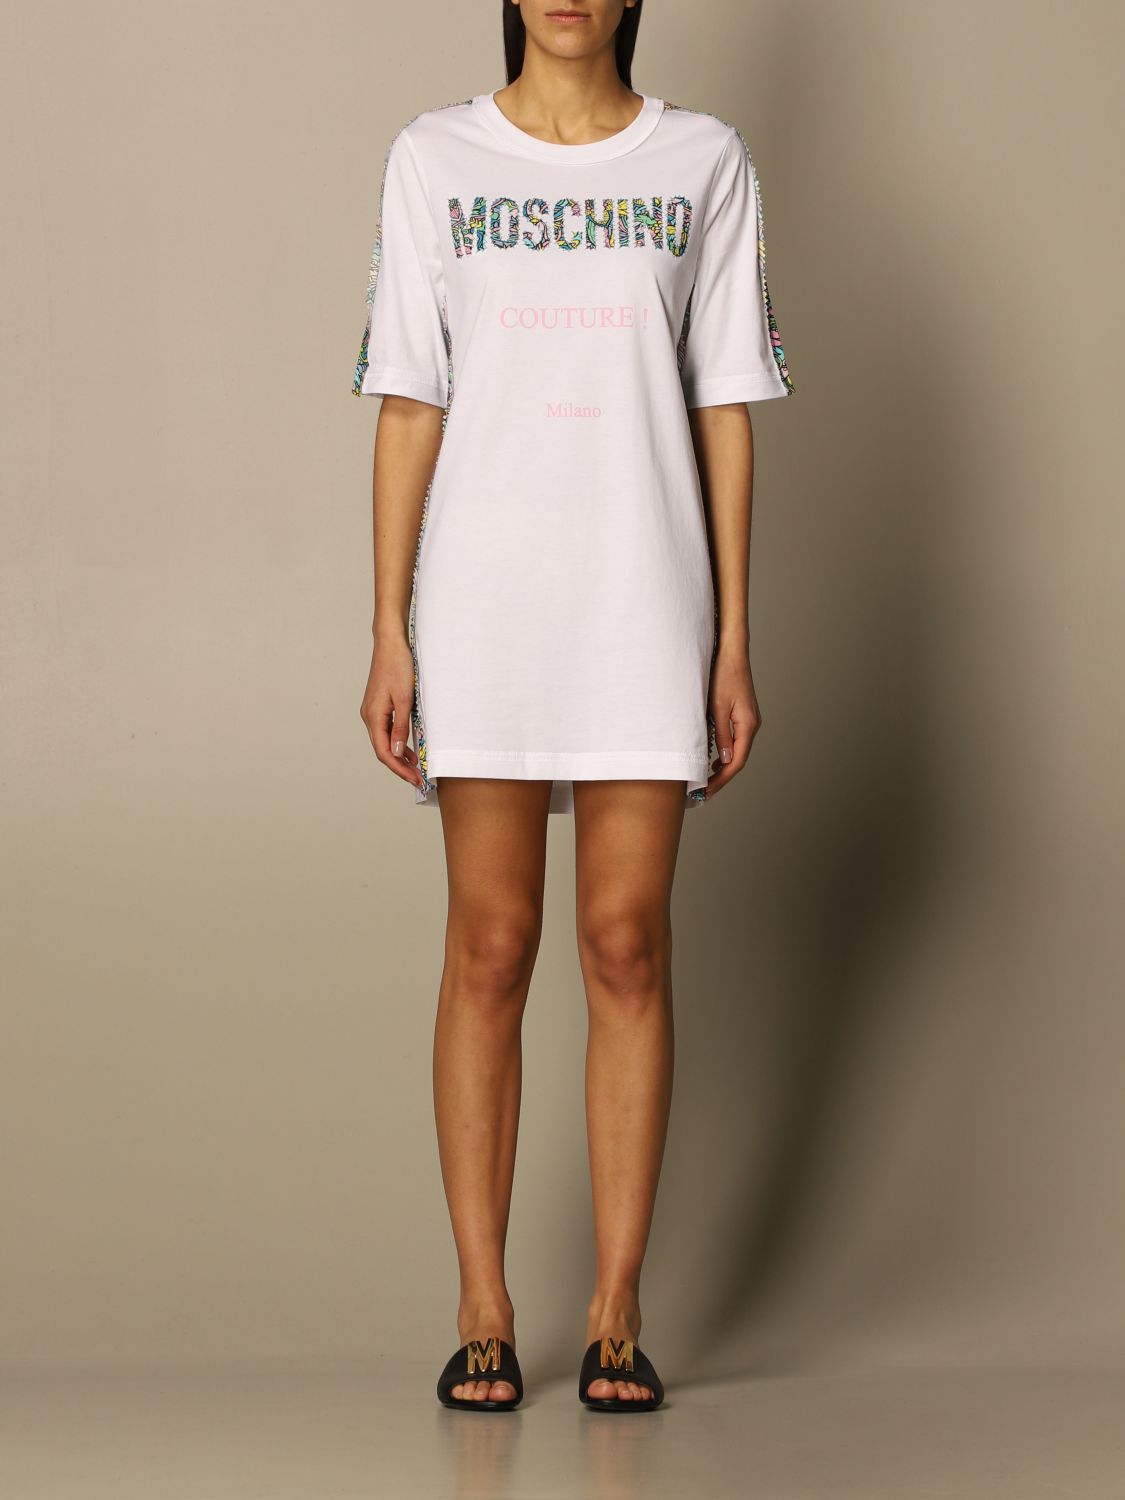 Dress Moschino Couture 0424 0440 GIGLIO ...